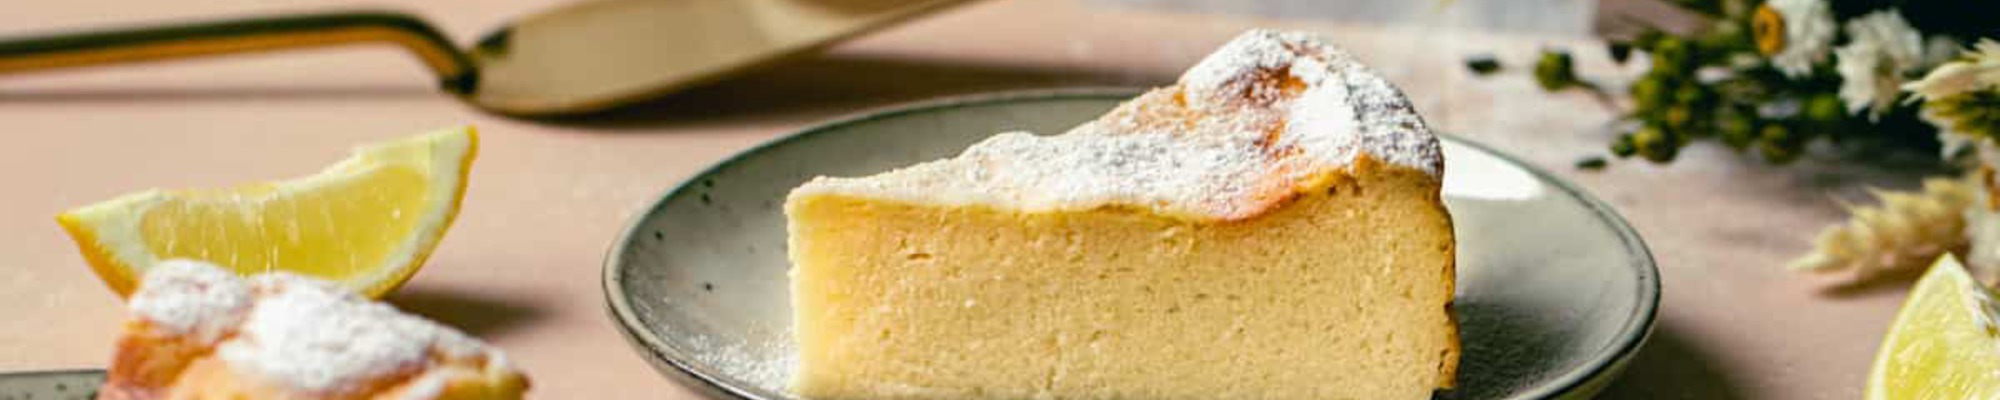 Migliaccio-ricottová torta. Ak sa ti z toho názvu zamotal jazyk, rozmotá ti ho jej lahodná chuť (Recept)